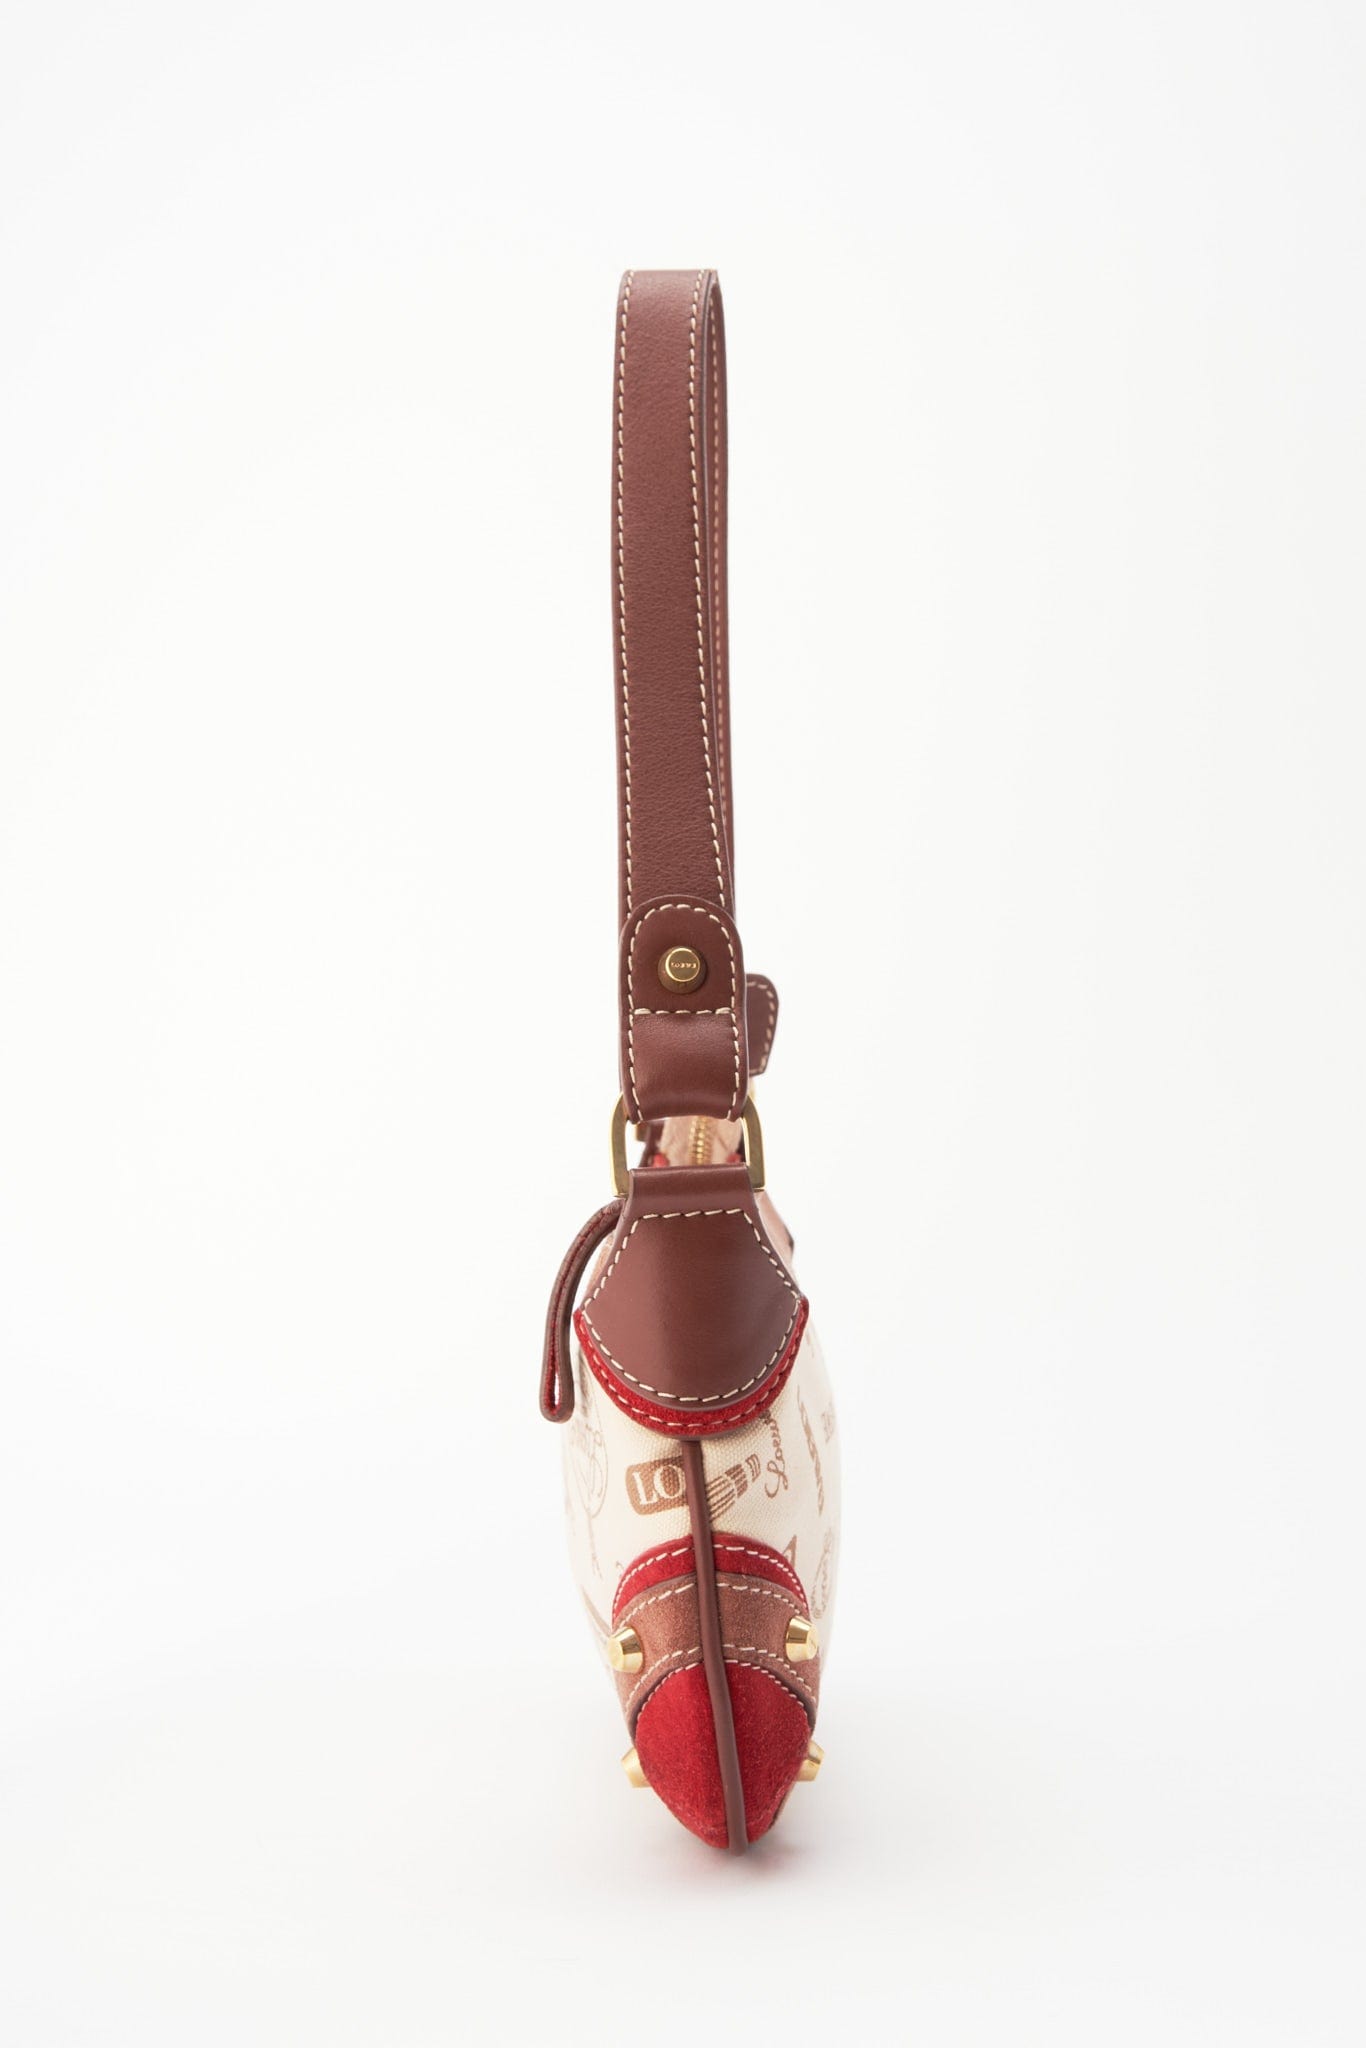 Louis Vuitton, Bags, Genuine Vintage Preowned Louis Vuitton Monogram Mm  Canvas Belt Tote Bag 280